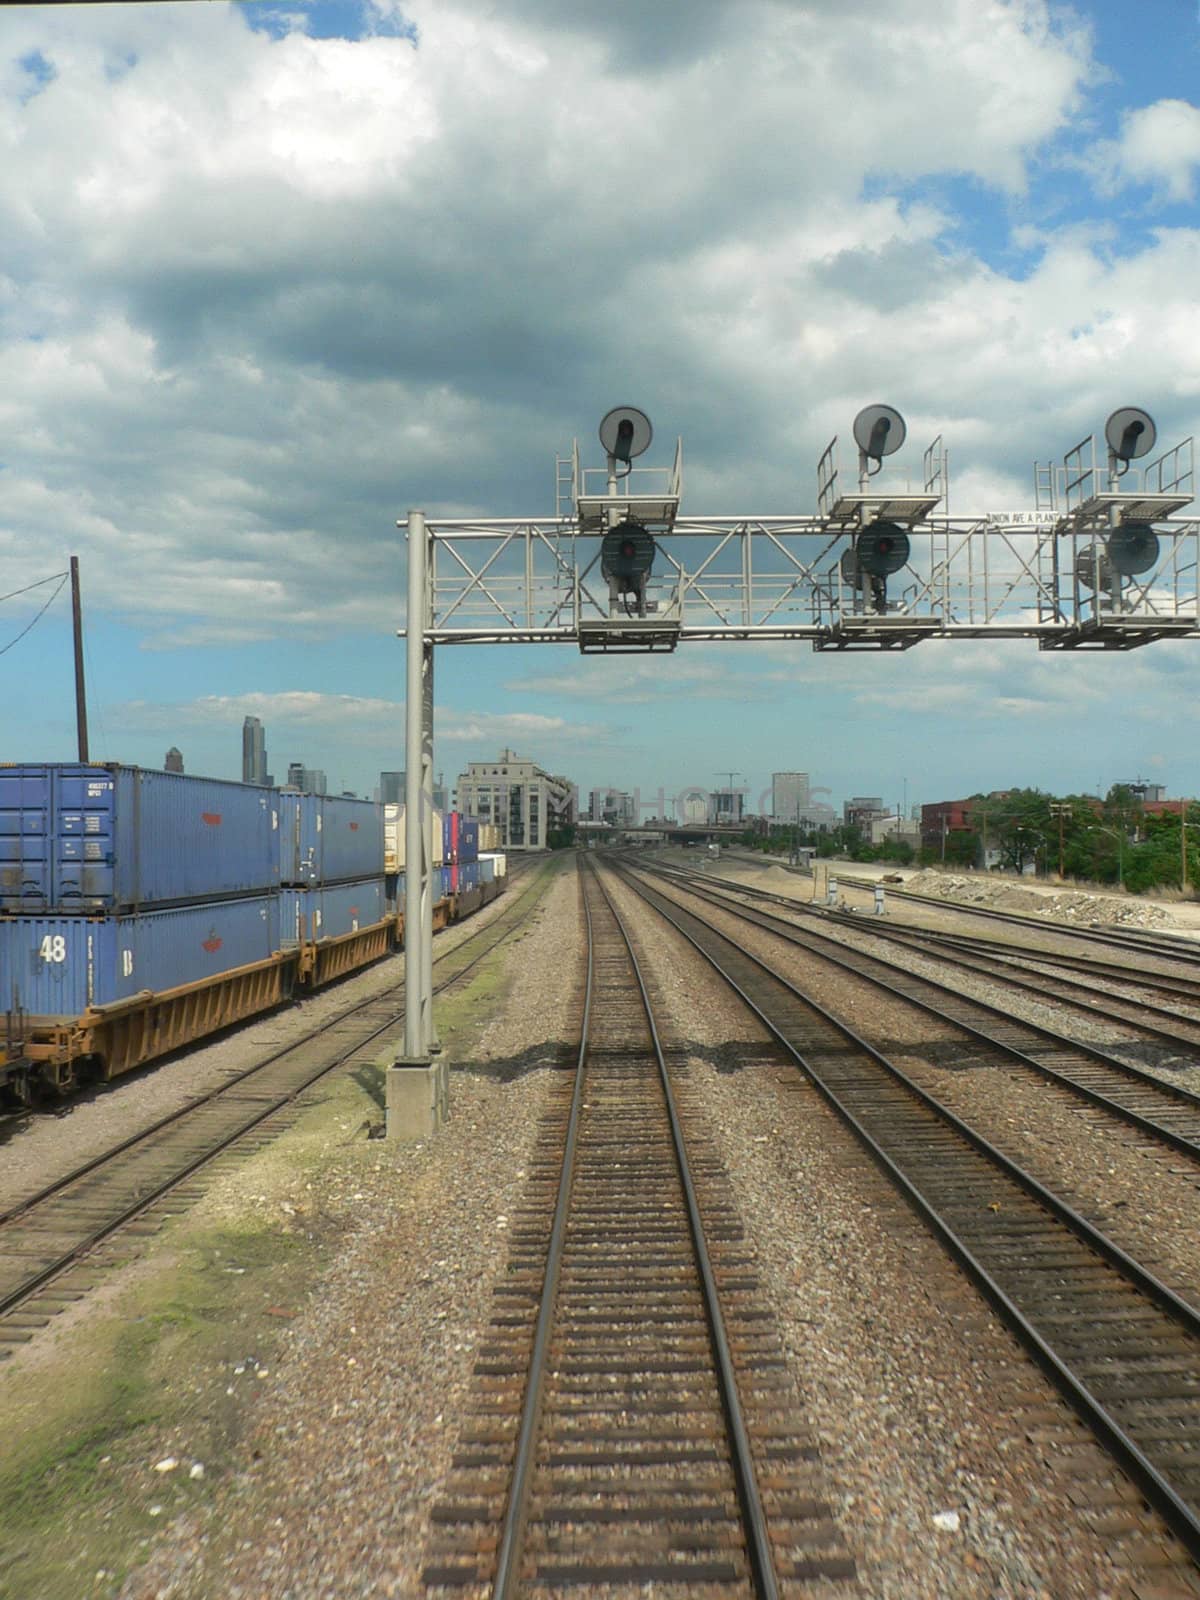 Rail yard near Chicago Illinois, USA.